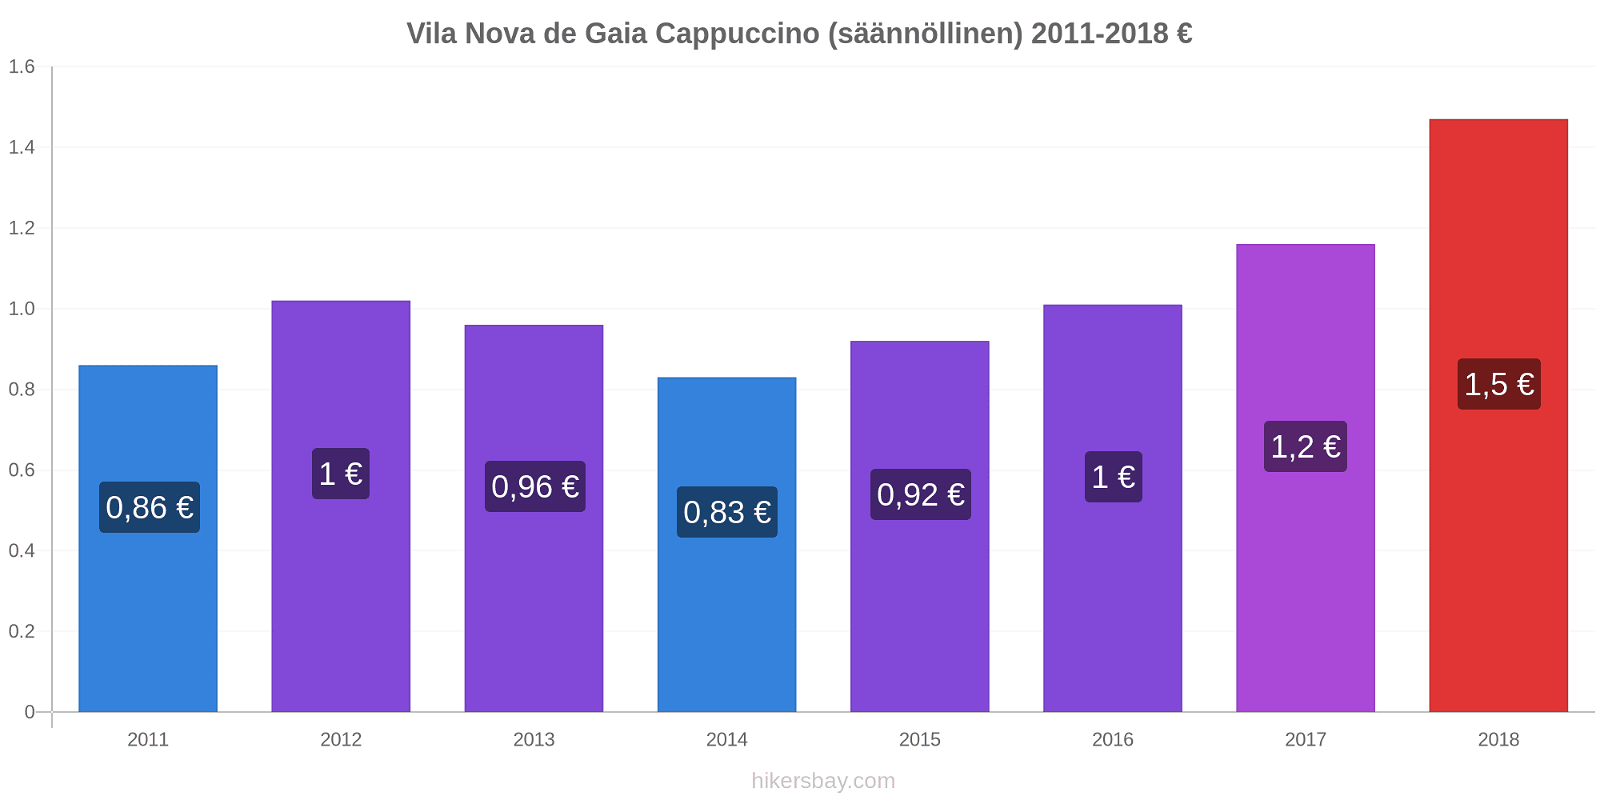 Vila Nova de Gaia hintojen muutokset Cappuccino (säännöllinen) hikersbay.com